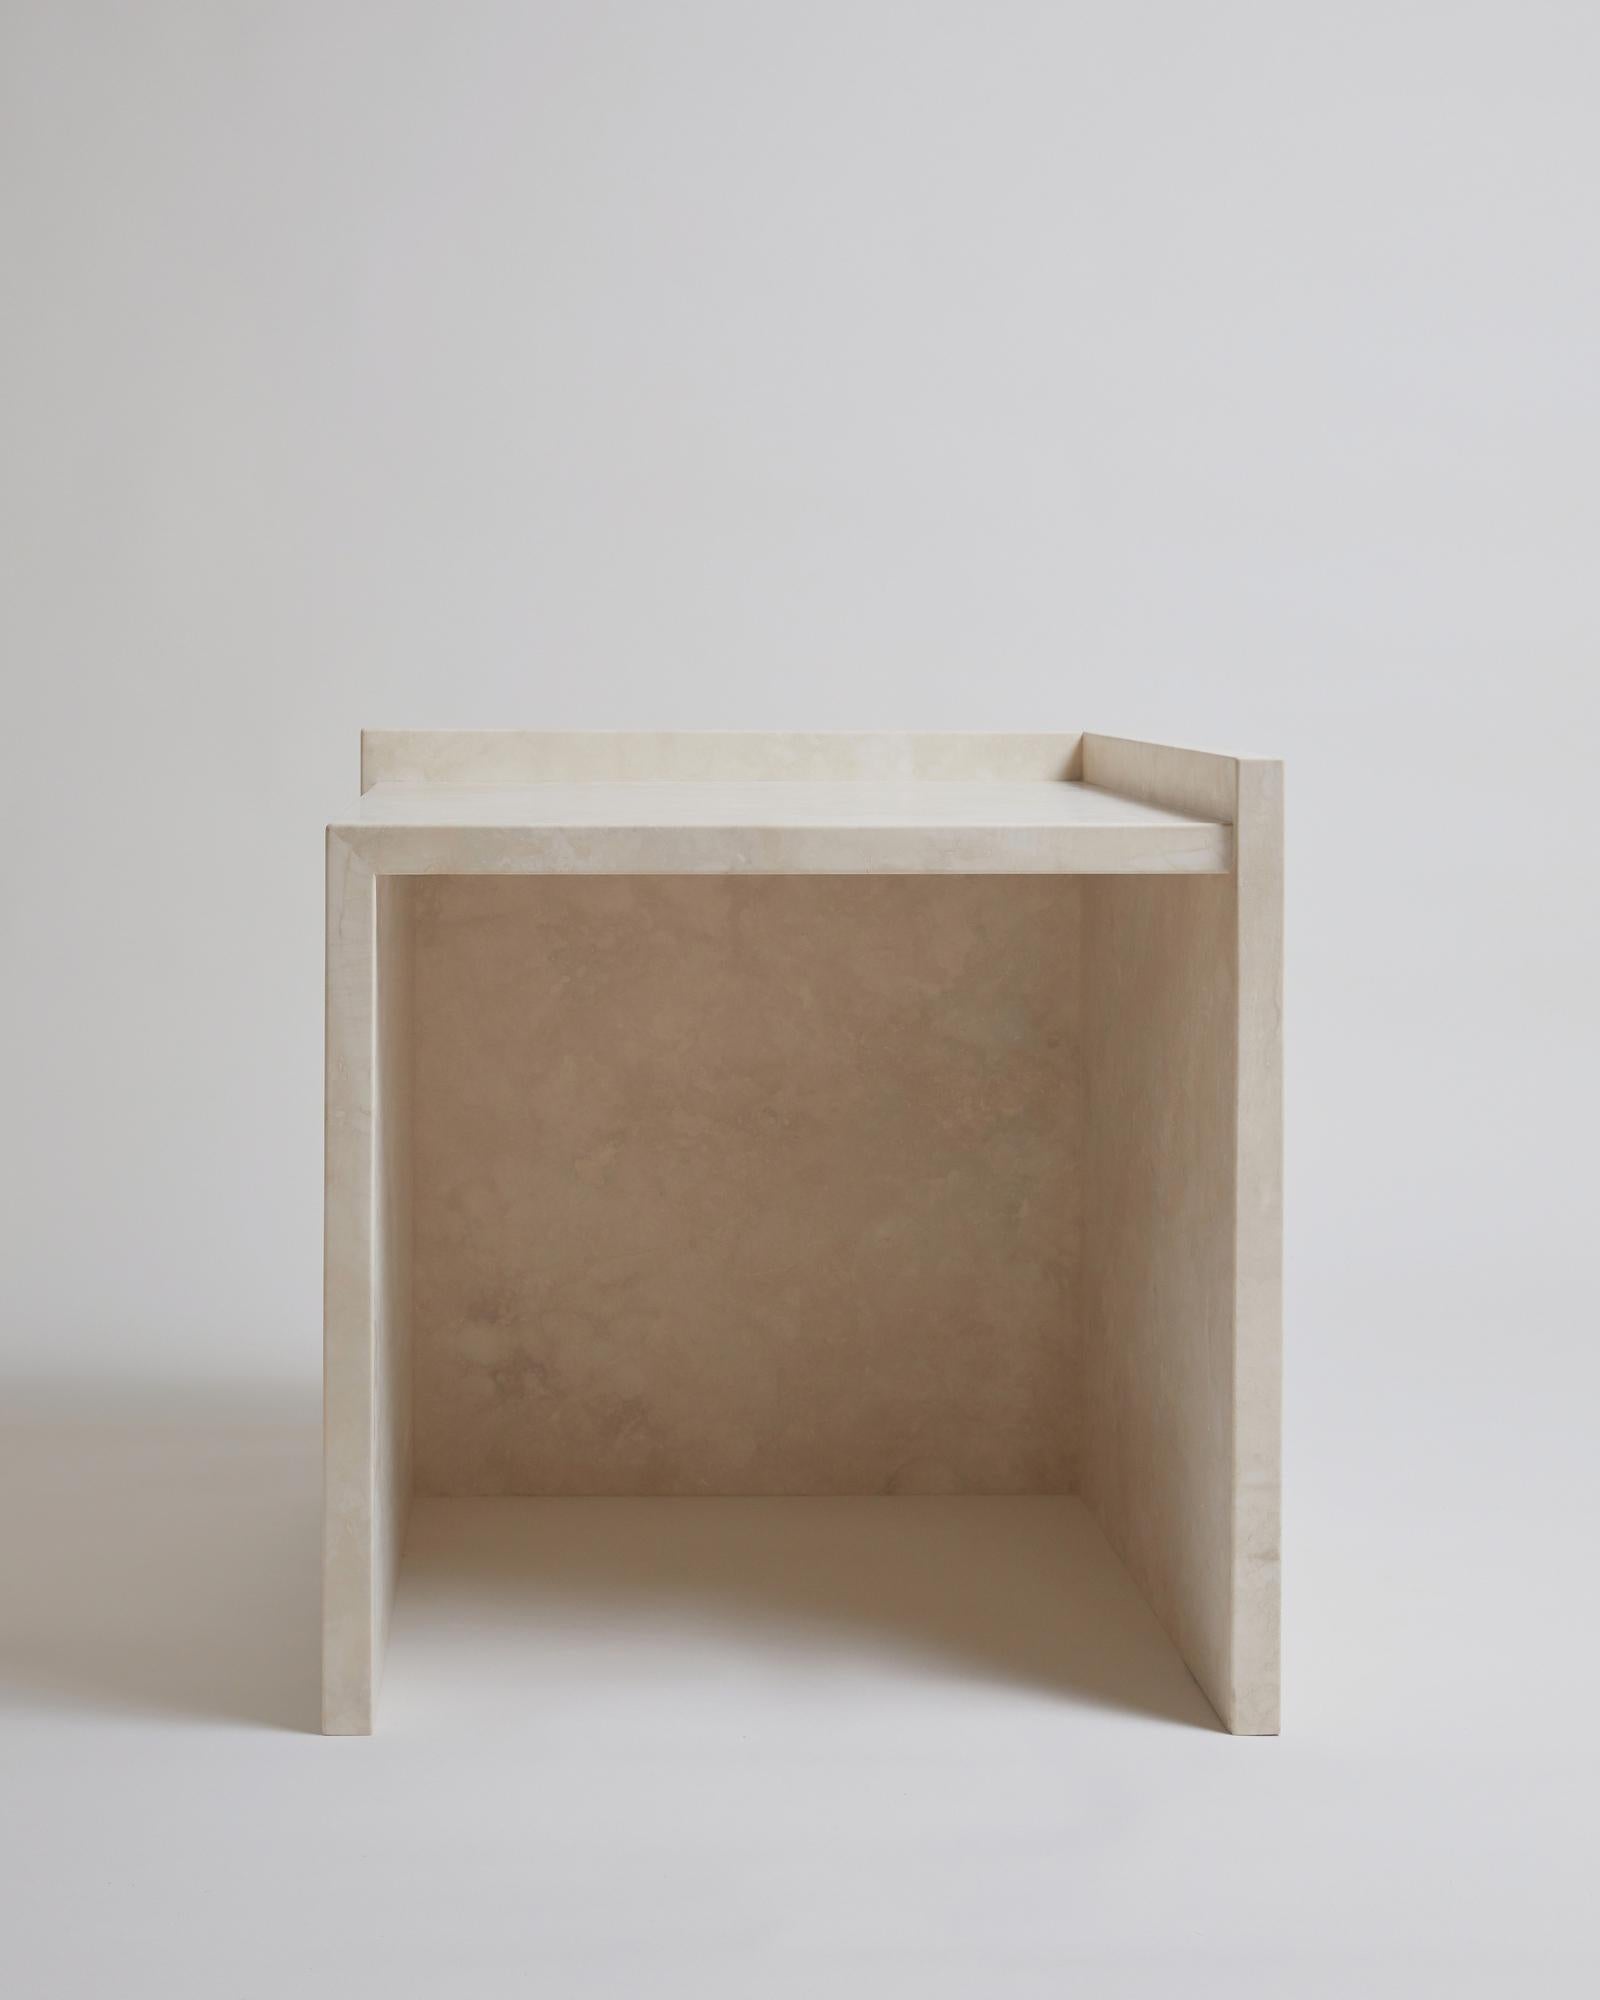 Der Beistelltisch AA112.2 aus der 'Pure Minimalist'-Kollektion von Amee Allsop ist ein schlichtes, architektonisches Design, bei dem Material und Form im Vordergrund stehen. Er ist elegant aus 3 cm starkem, massivem elfenbeinfarbenem Travertin